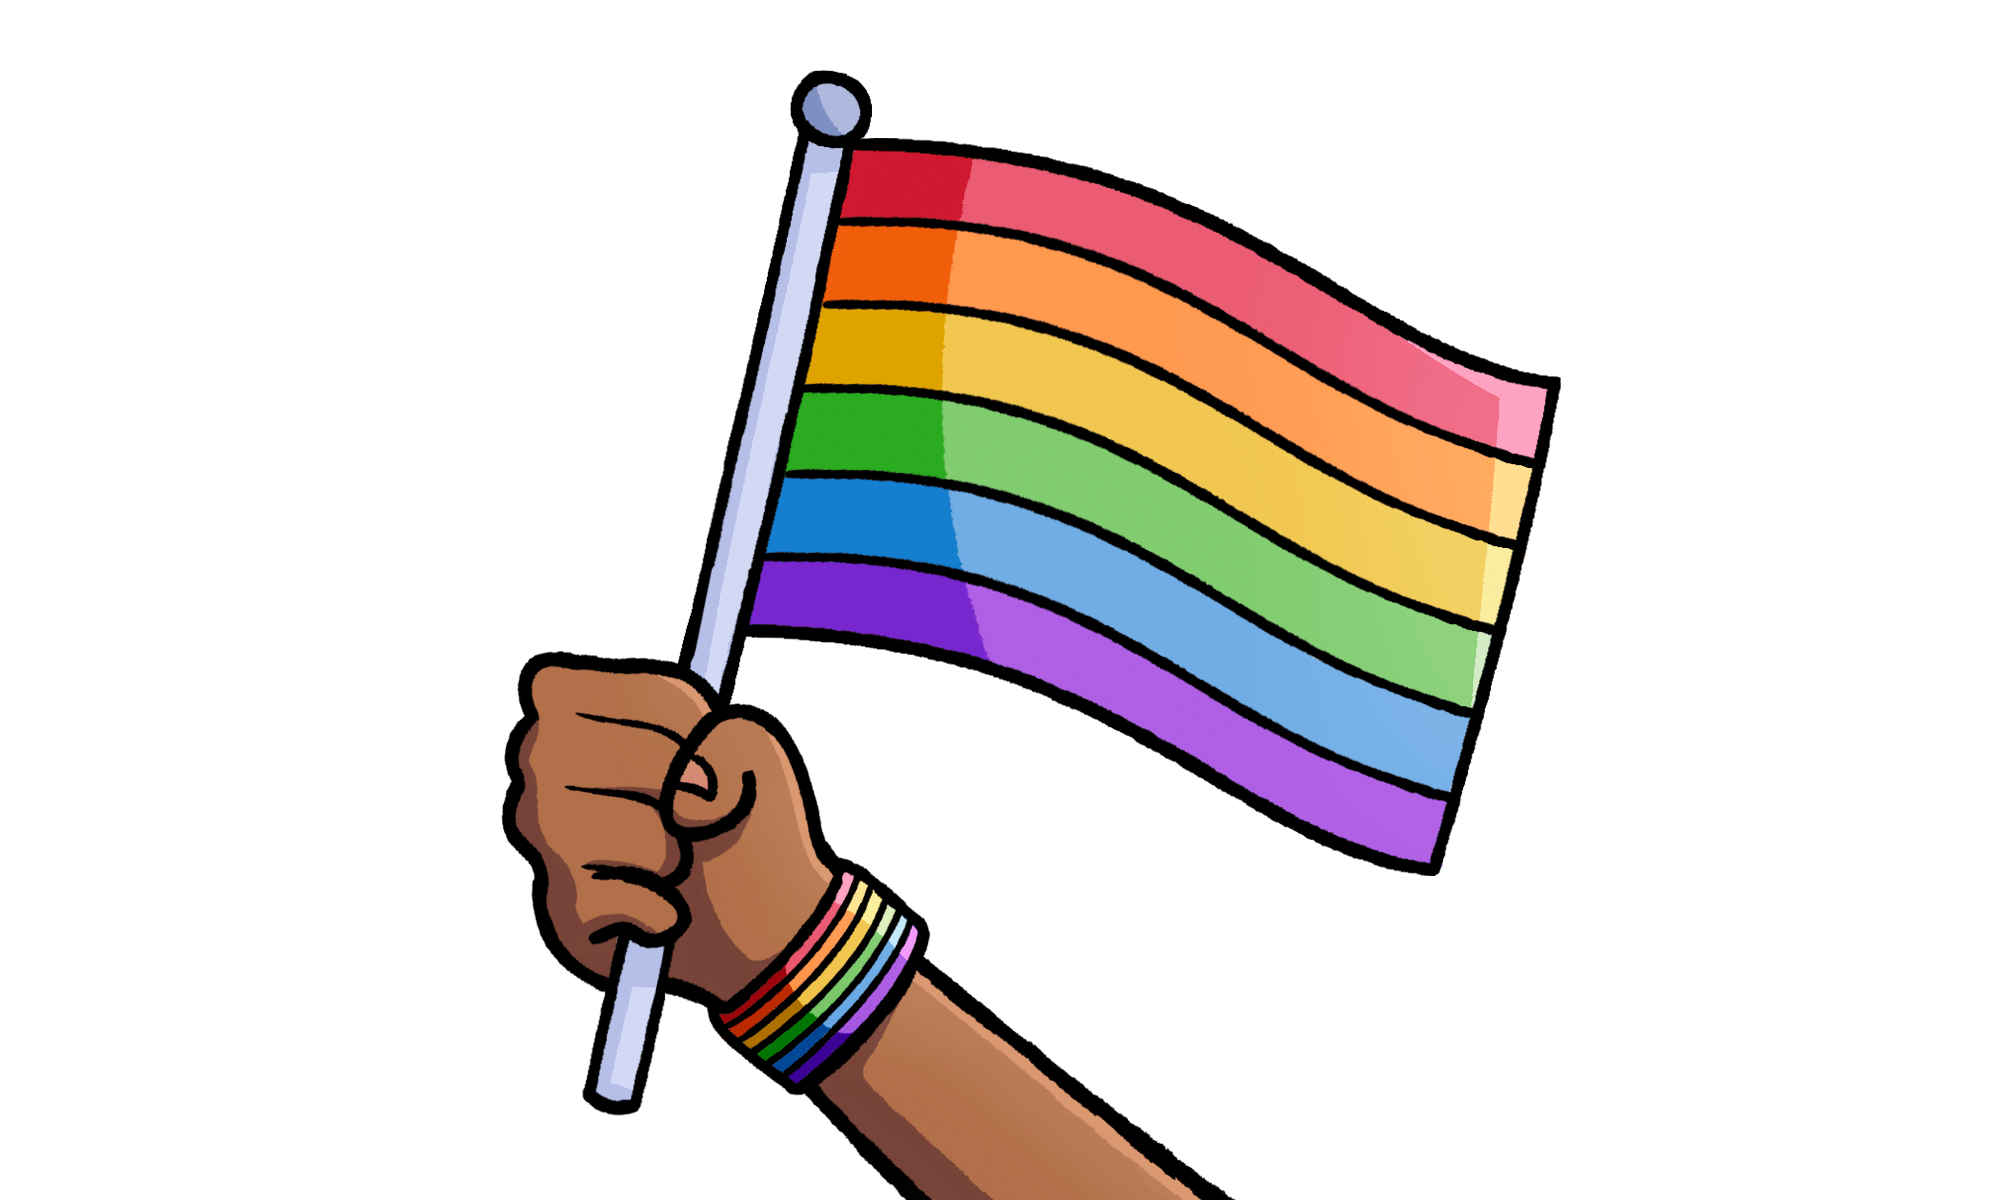 NYC St Patrick&#8217;s Day parade drops ban on gay groups